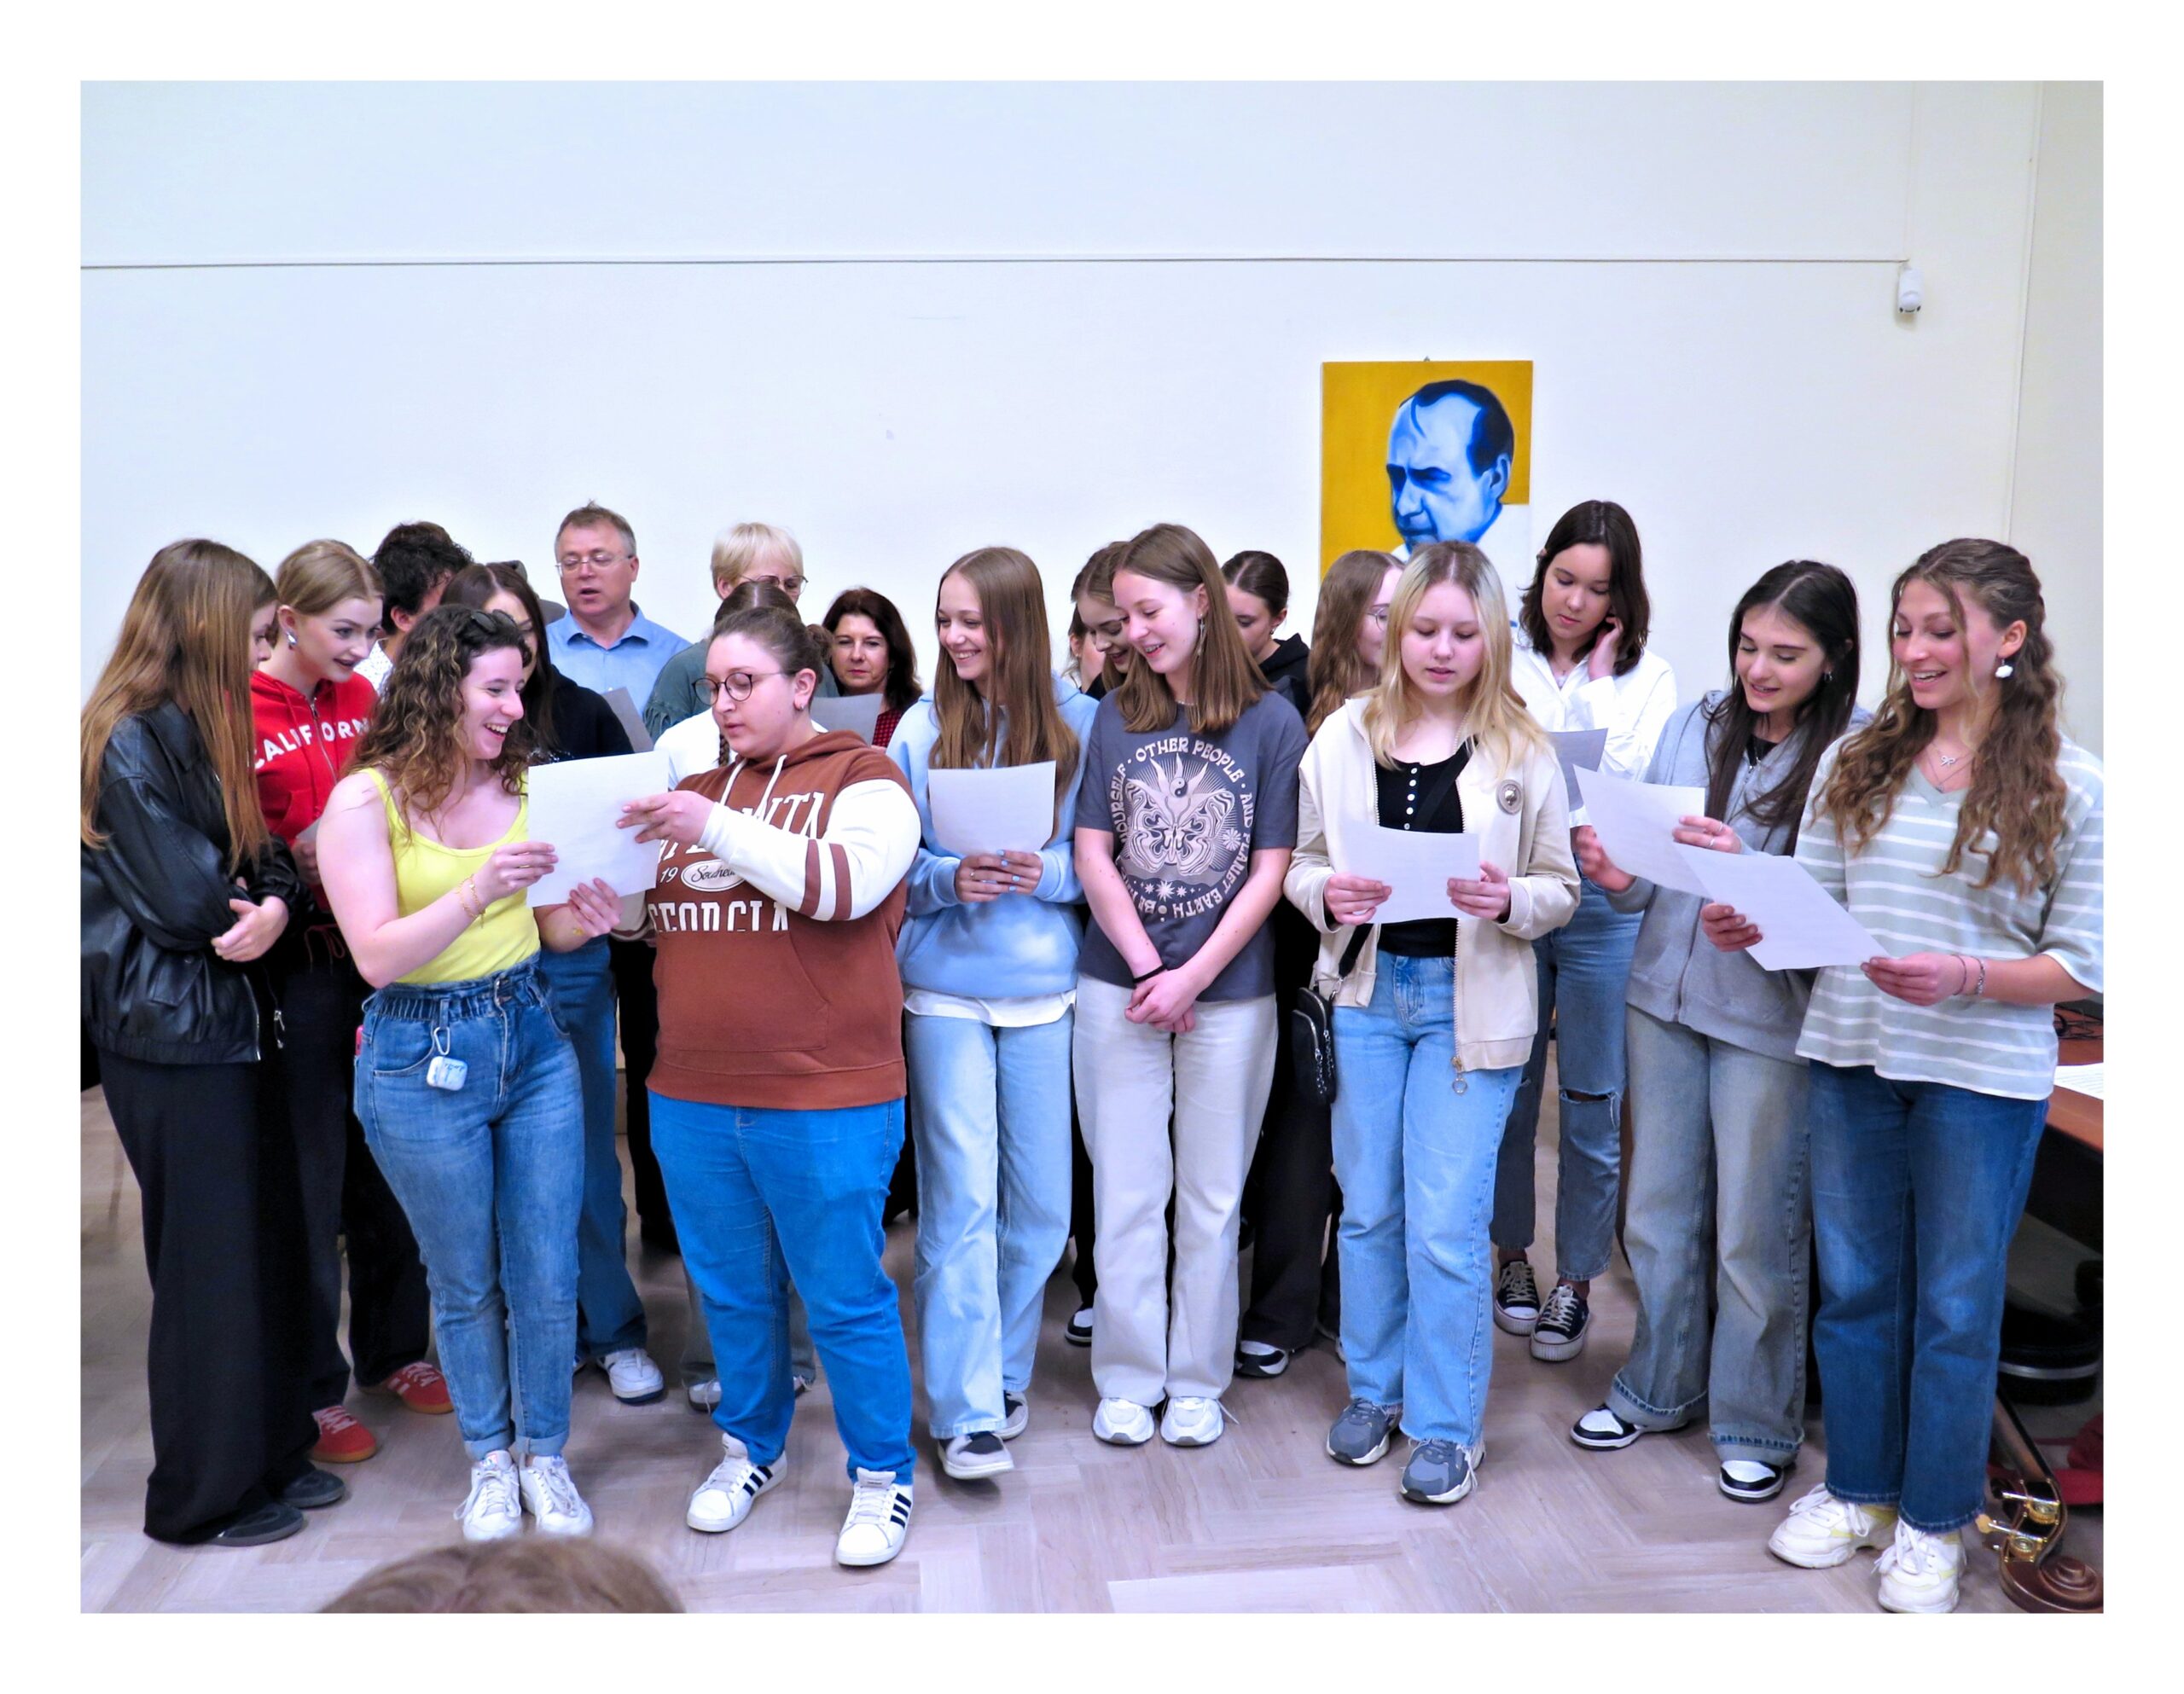 Caltanissetta. All’IISS “Manzoni – Juvara” concerto per gli alunni polacchi ospiti del progetto Erasmus